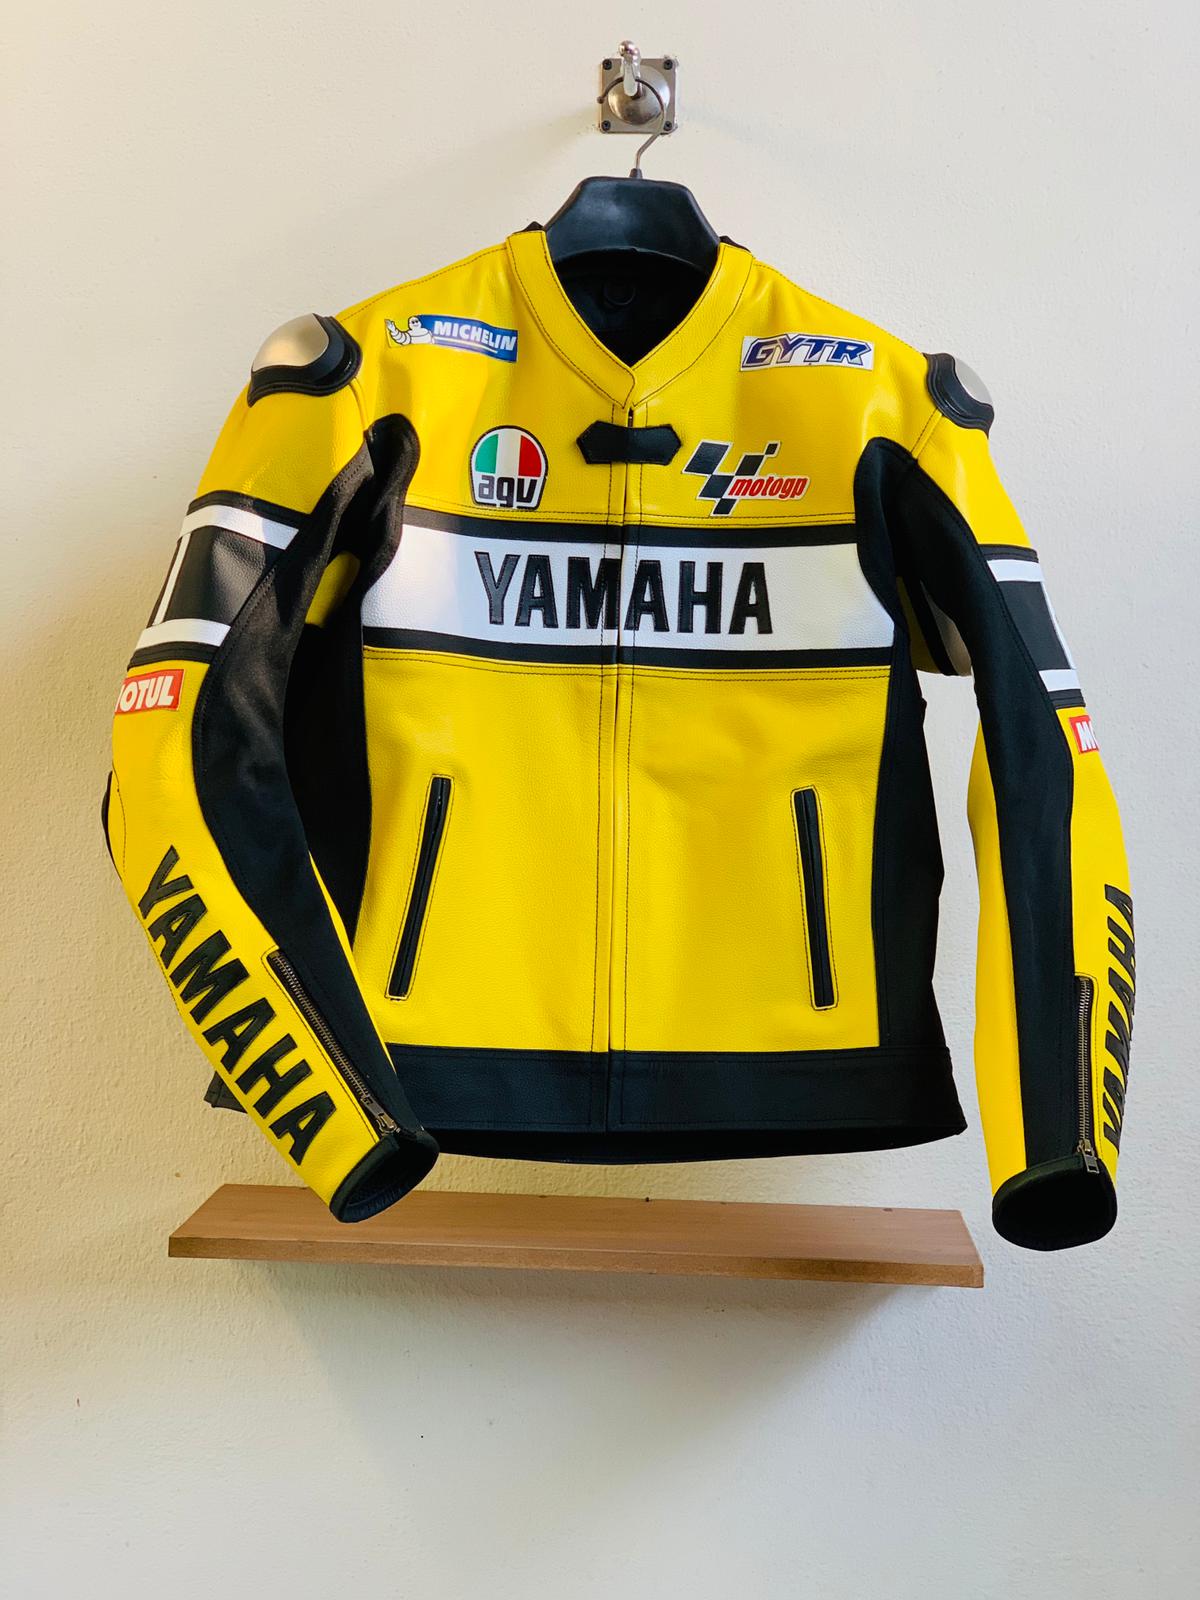 Yamaha Rossi 46 Yellow Red Leather Biker Racing Jacket